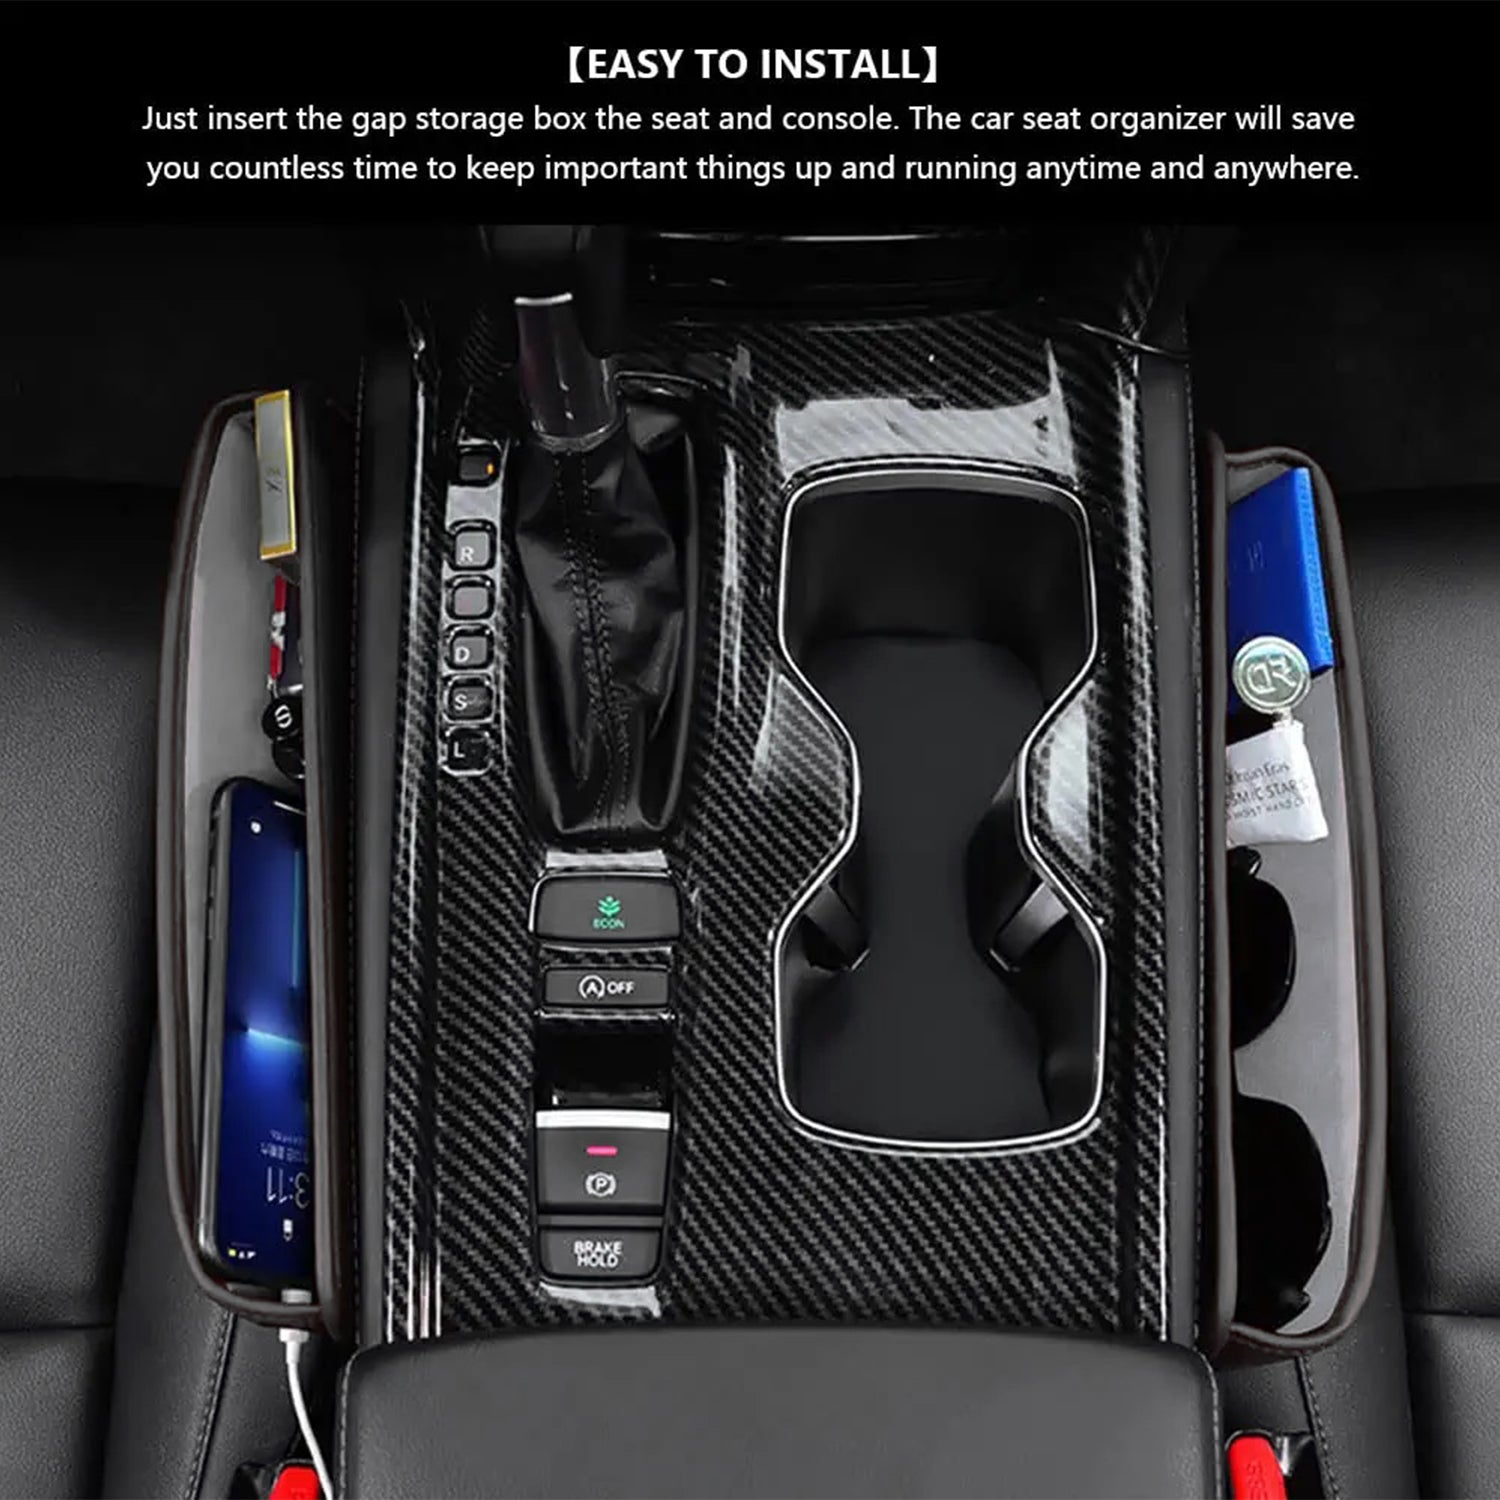 Premium Car Seat Gap Filler Mercedes - Enhance Your Interior